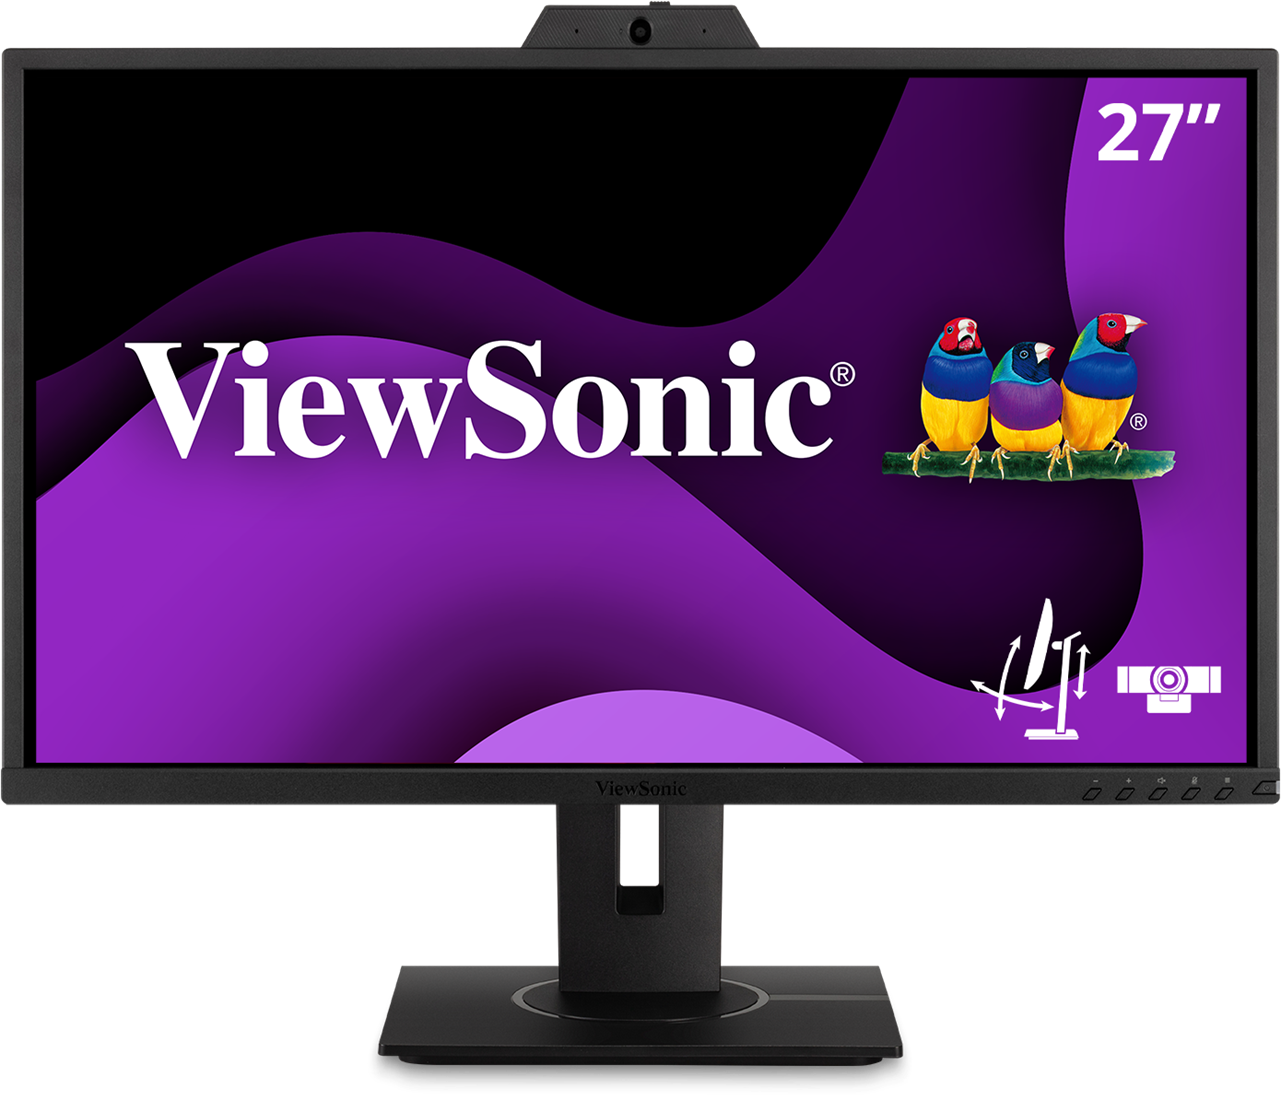 Geaccepteerd Kort geleden Heel veel goeds ViewSonic VG2740V WorkPro monitor met ingebouwde webcam